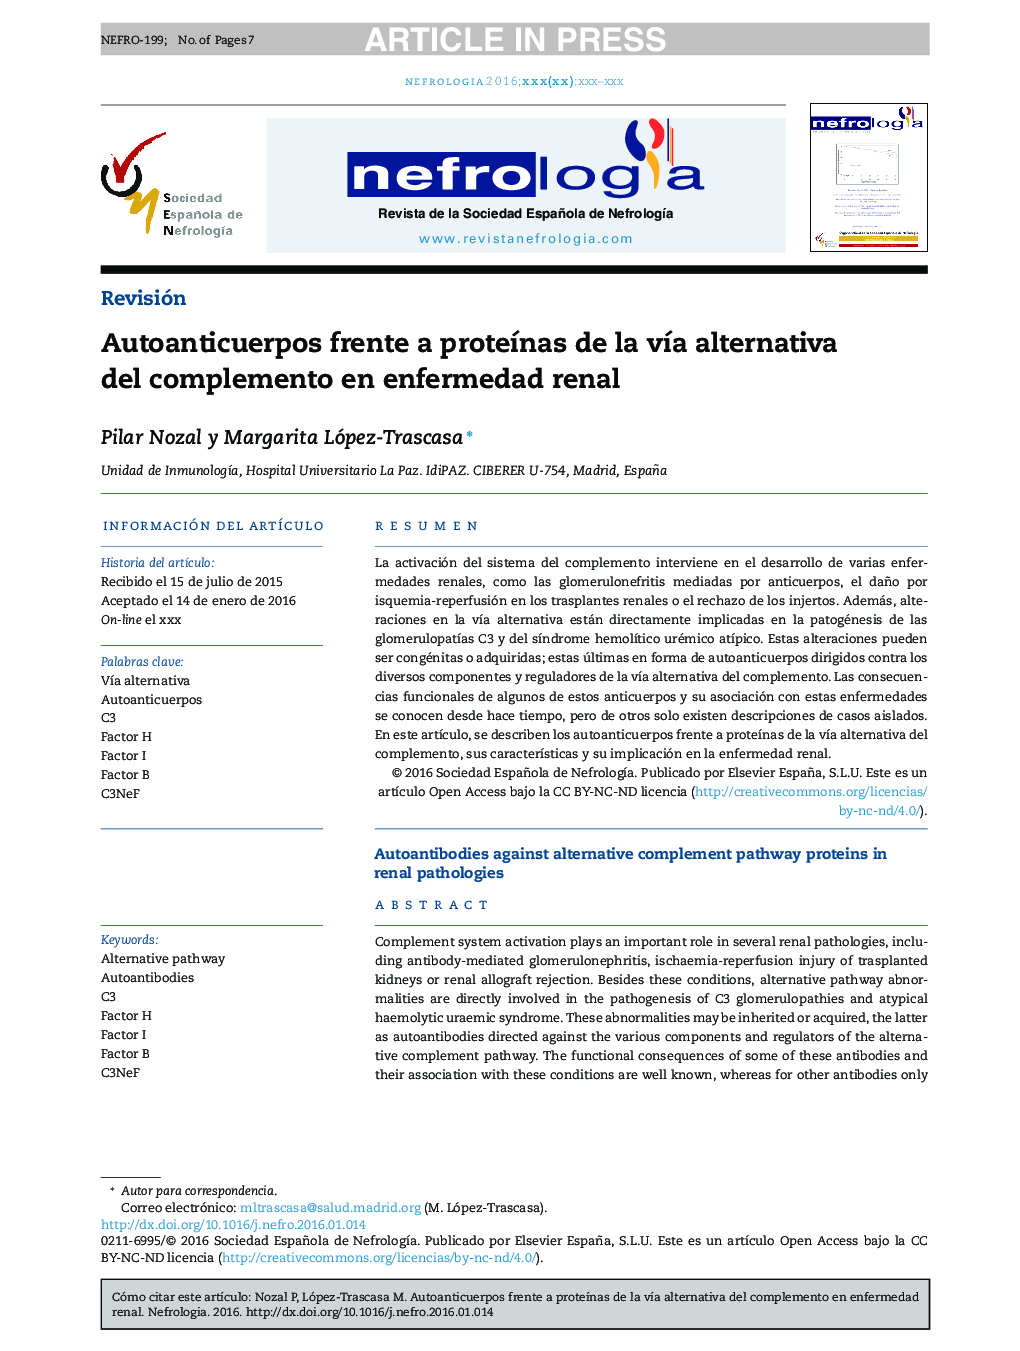 Autoanticuerpos frente a proteÃ­nas de la vÃ­a alternativa del complemento en enfermedad renal